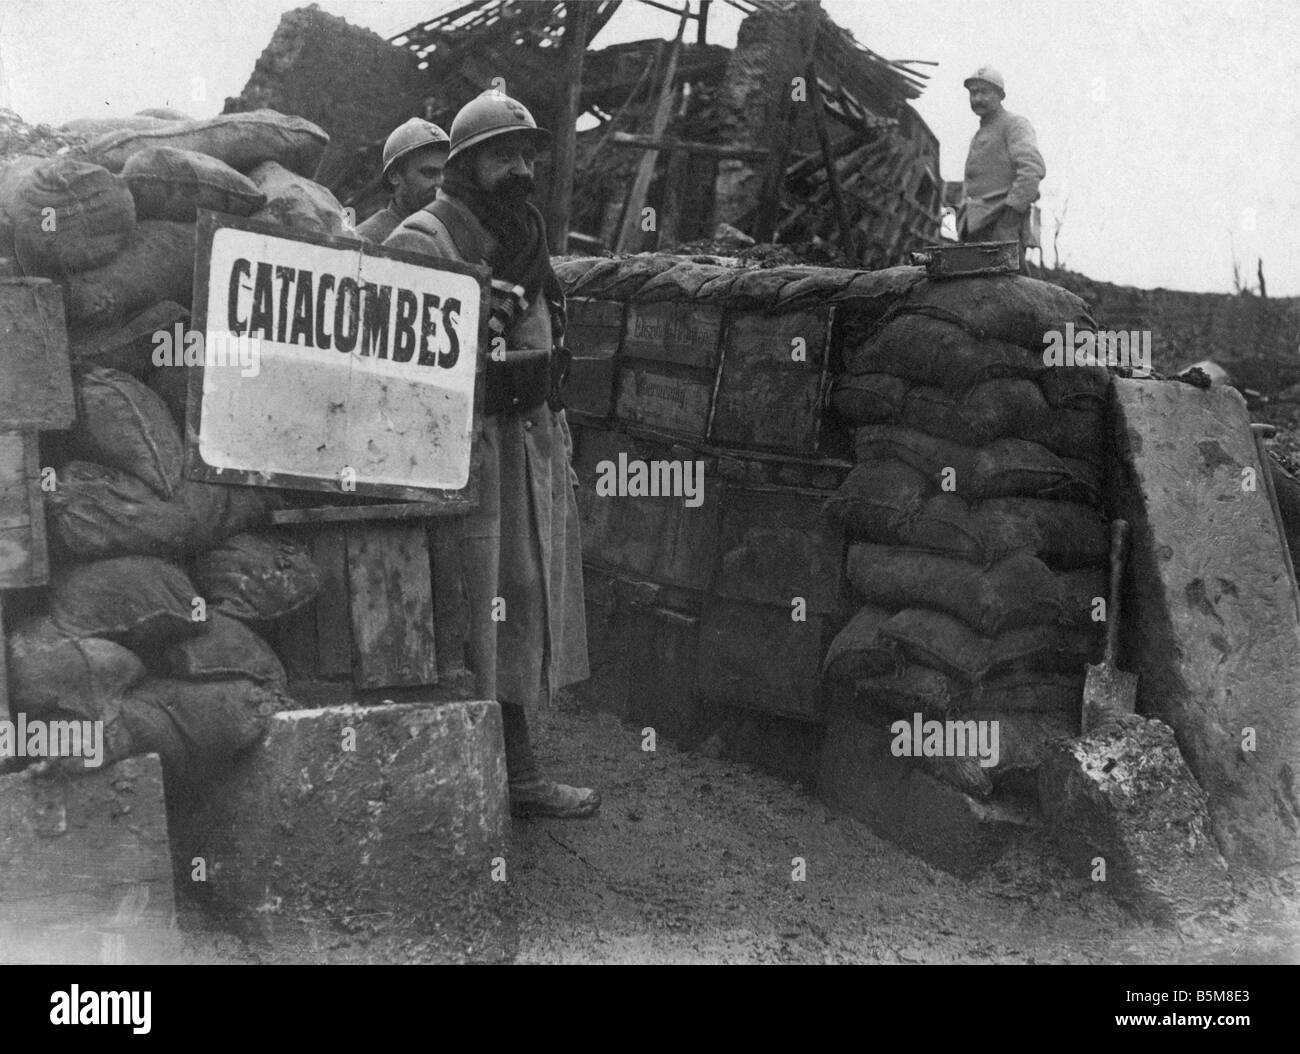 2 G55 F1 1916 62 WW1 französische Gräben Somme Foto Geschichte Weltkrieg 1 Frankreich Schlacht des Somme französischen Soldaten am Eingang Stockfoto